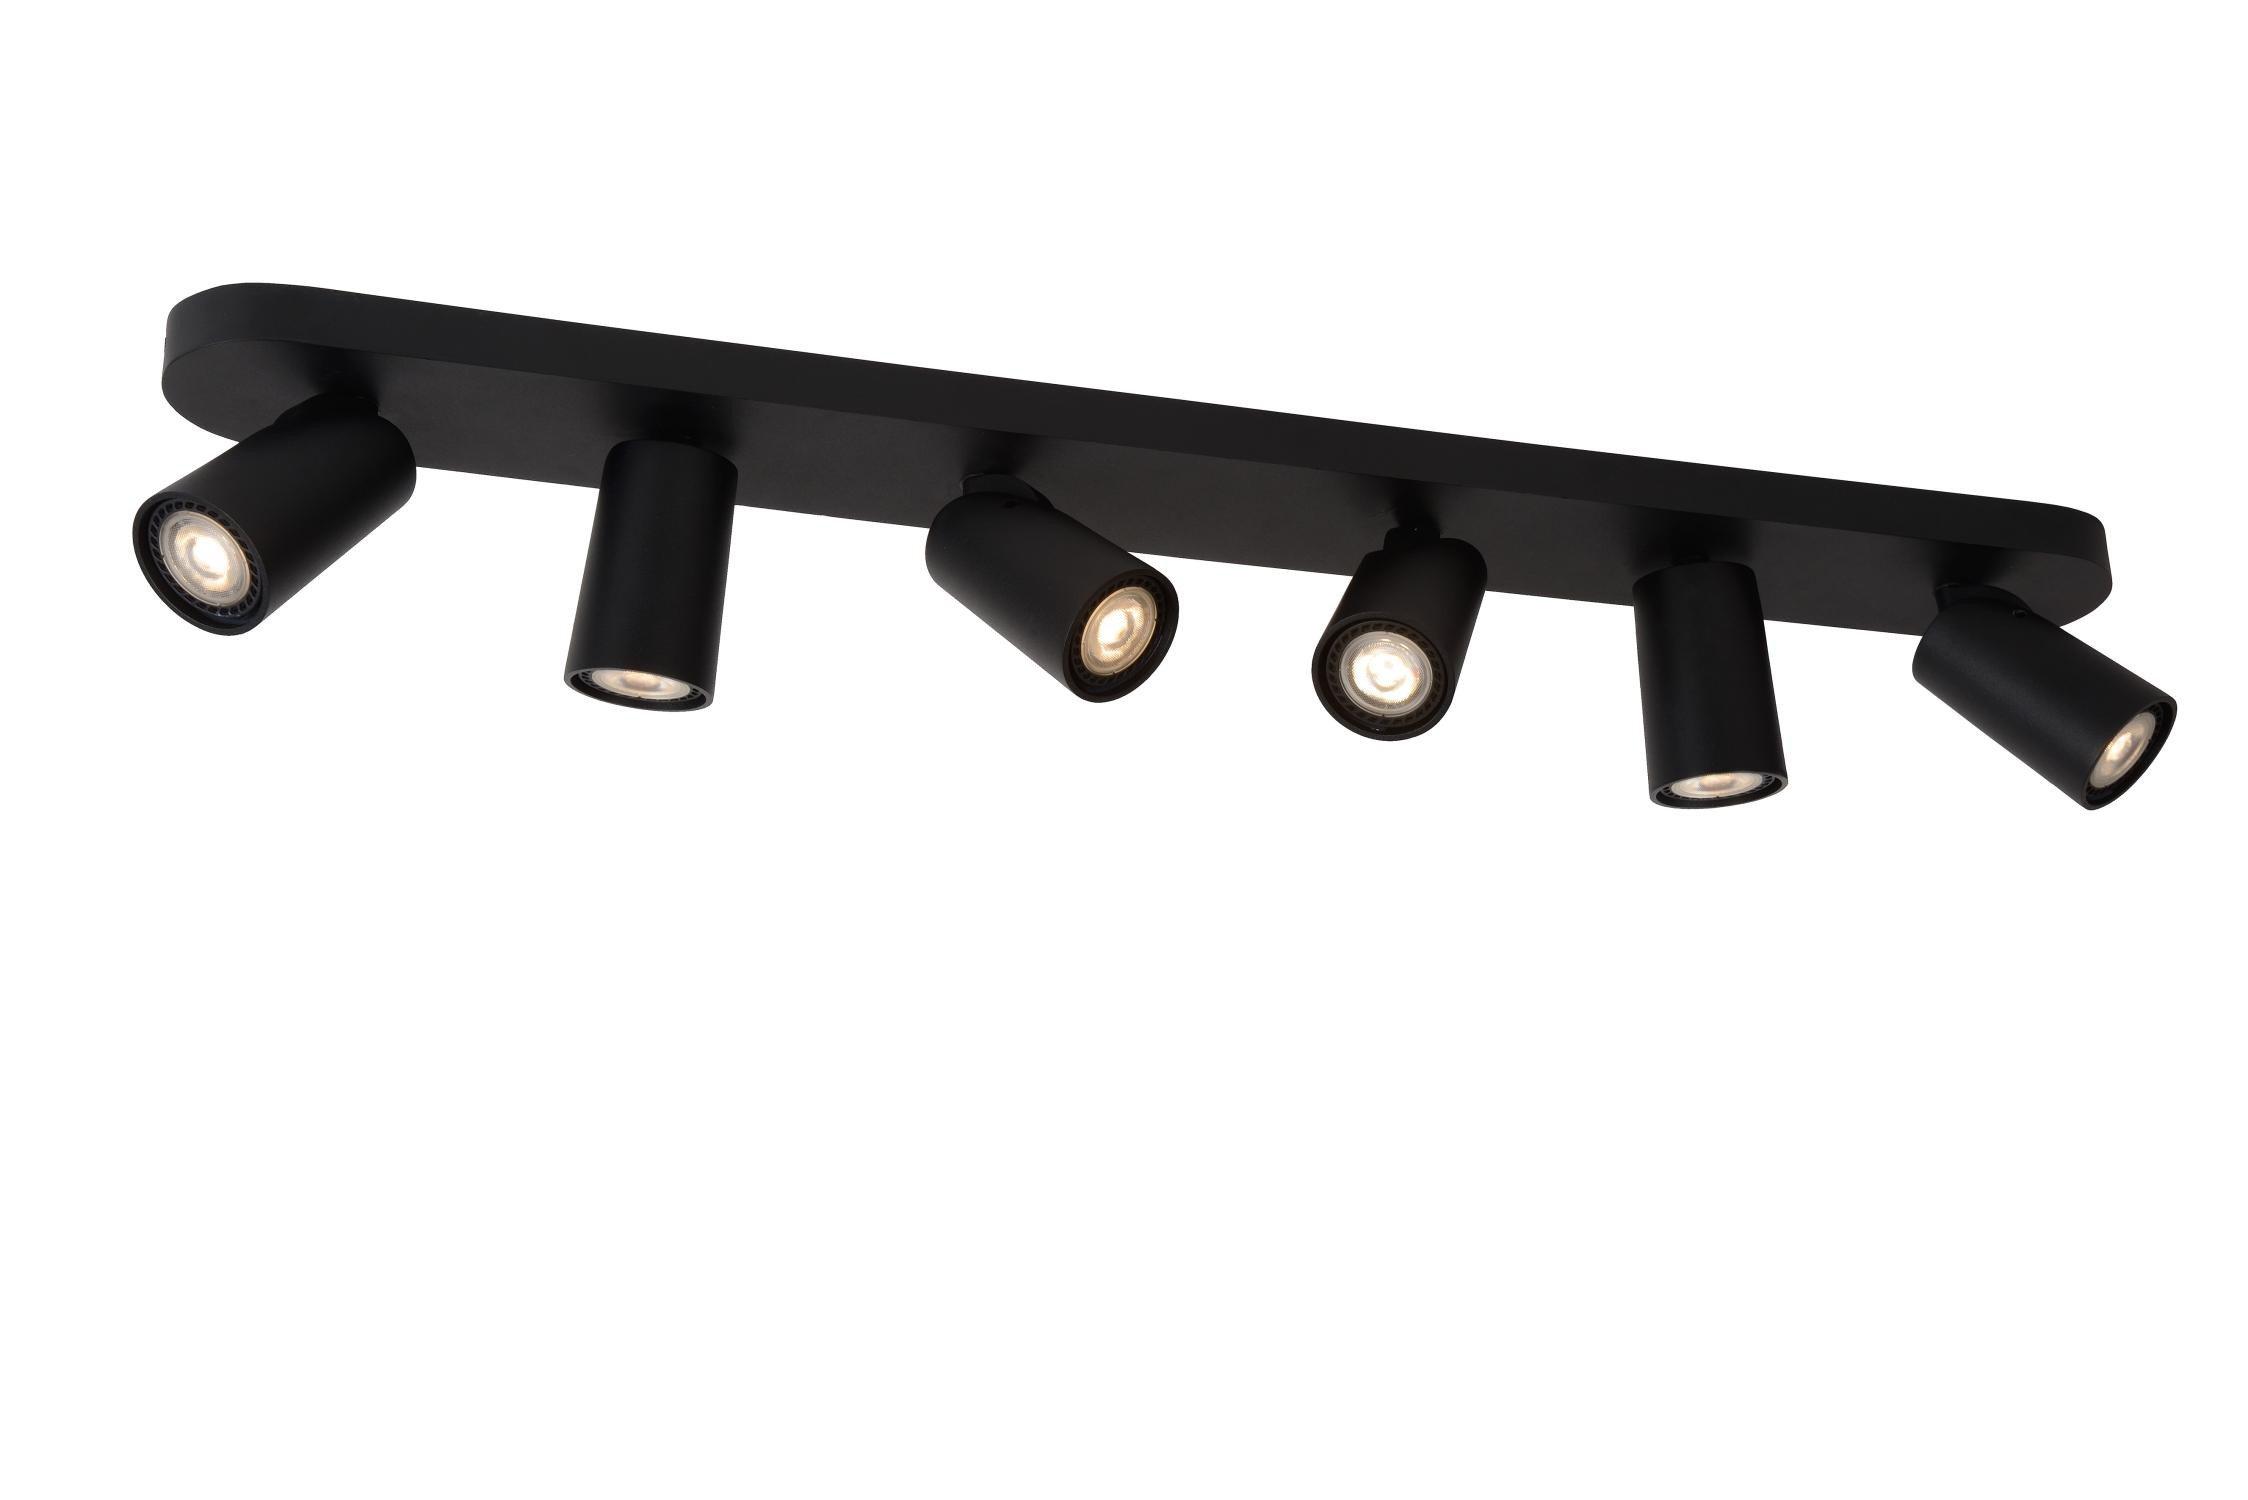 Lucide Xyrus Modern Ceiling Spotlight Bar LED Dim to warm GU10 6x5W 2200K3000K Black